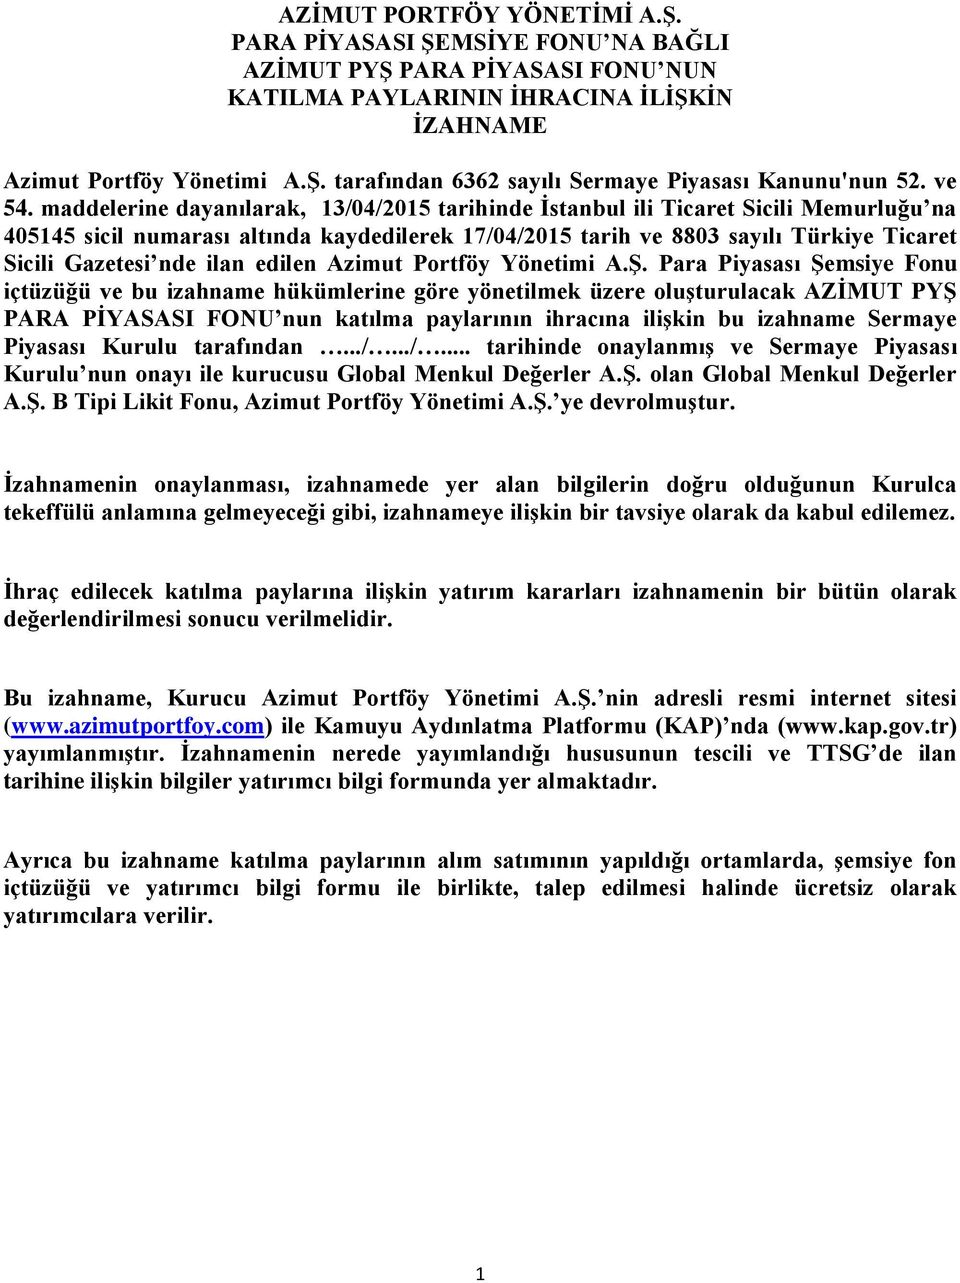 maddelerine dayanılarak, 13/04/2015 tarihinde İstanbul ili Ticaret Sicili Memurluğu na 405145 sicil numarası altında kaydedilerek 17/04/2015 tarih ve 8803 sayılı Türkiye Ticaret Sicili Gazetesi nde